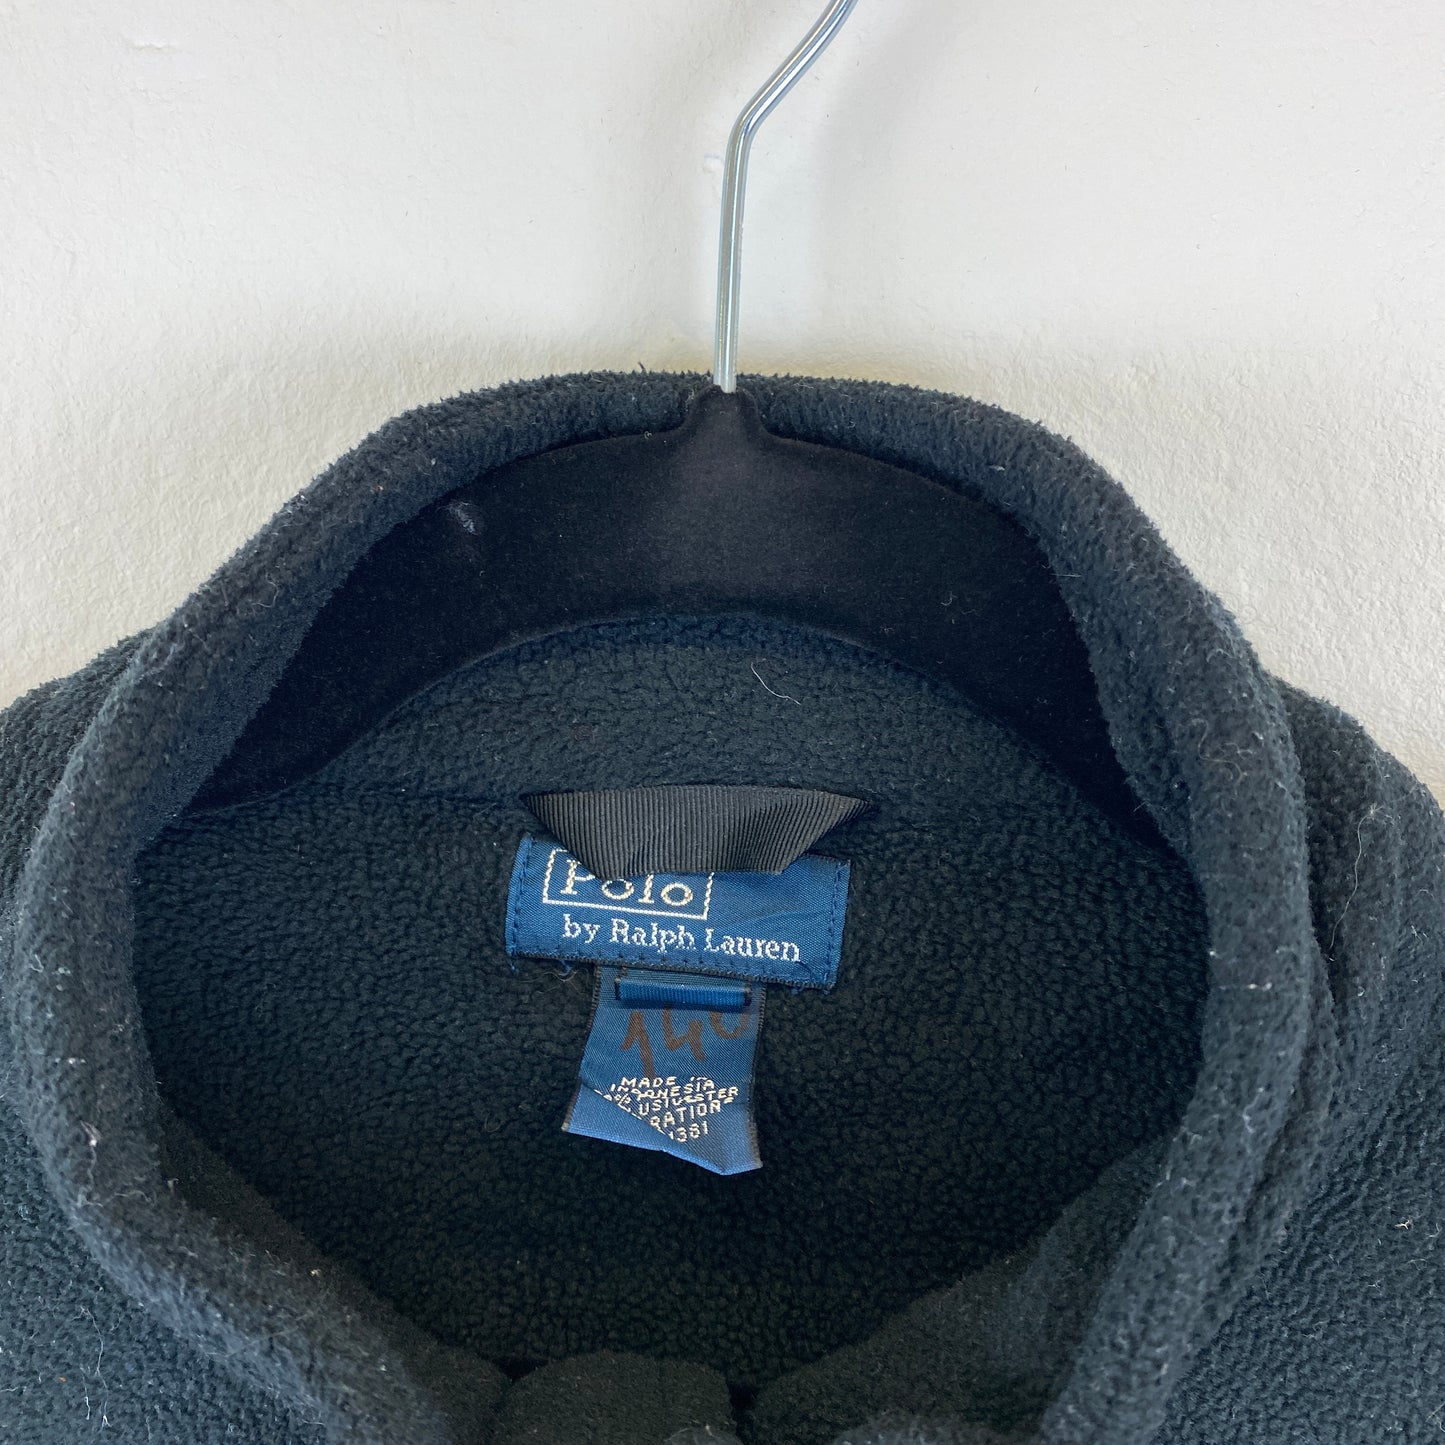 Polo Ralph Lauren fleece zip sweater (XS)